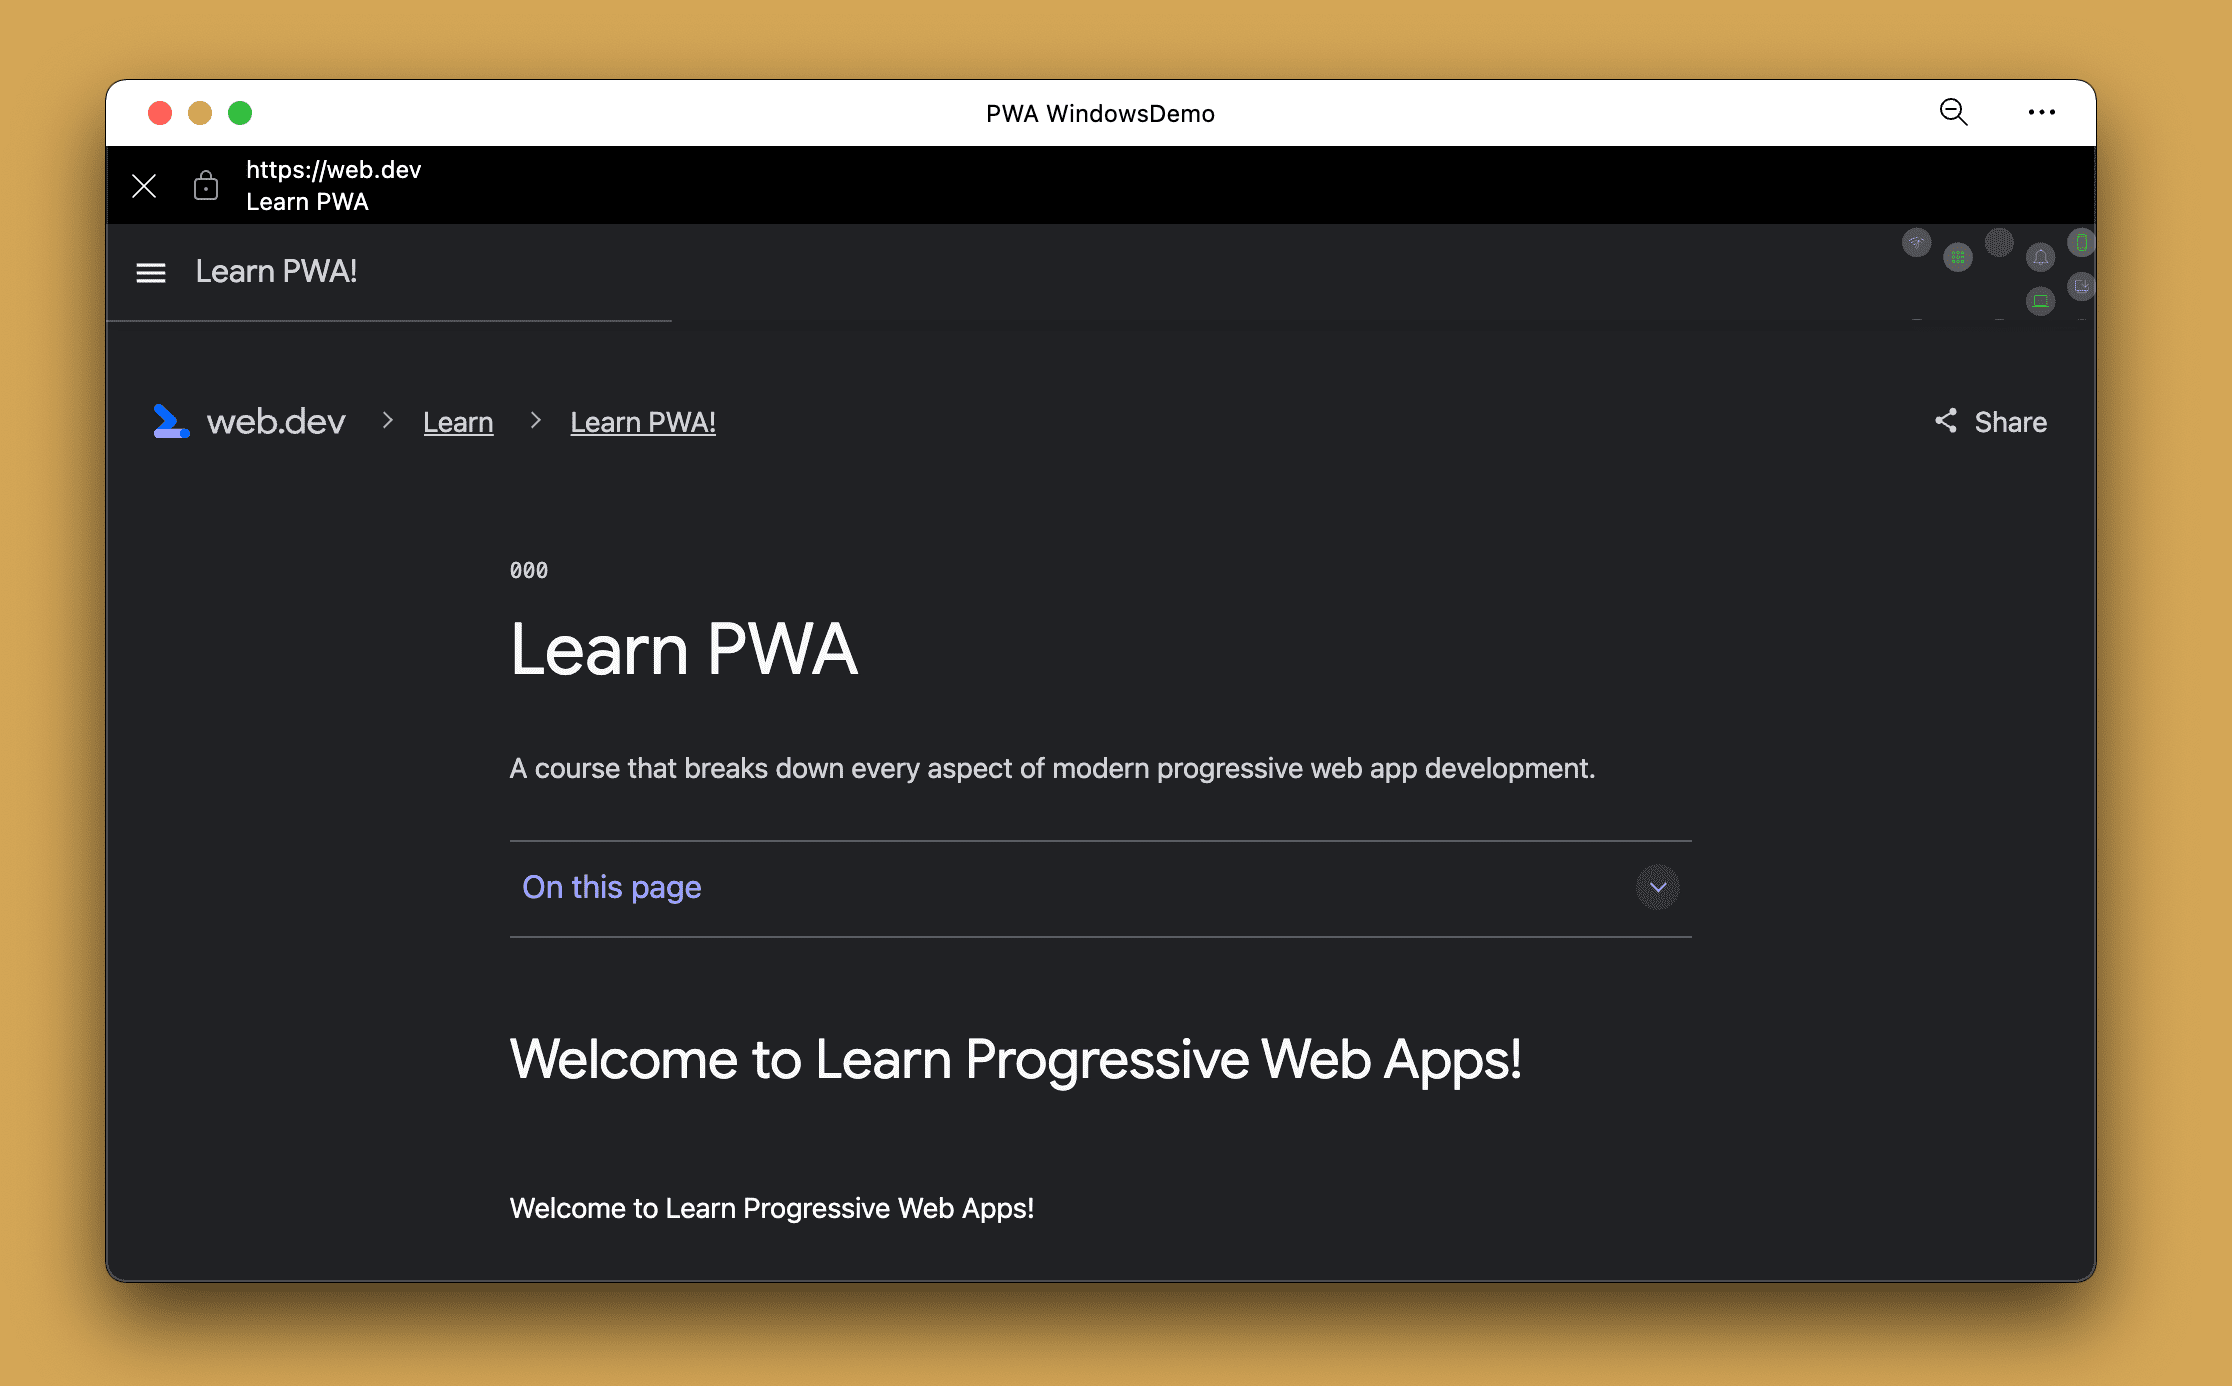 桌面设备 PWA 上浏览范围外网址时的应用内浏览器。